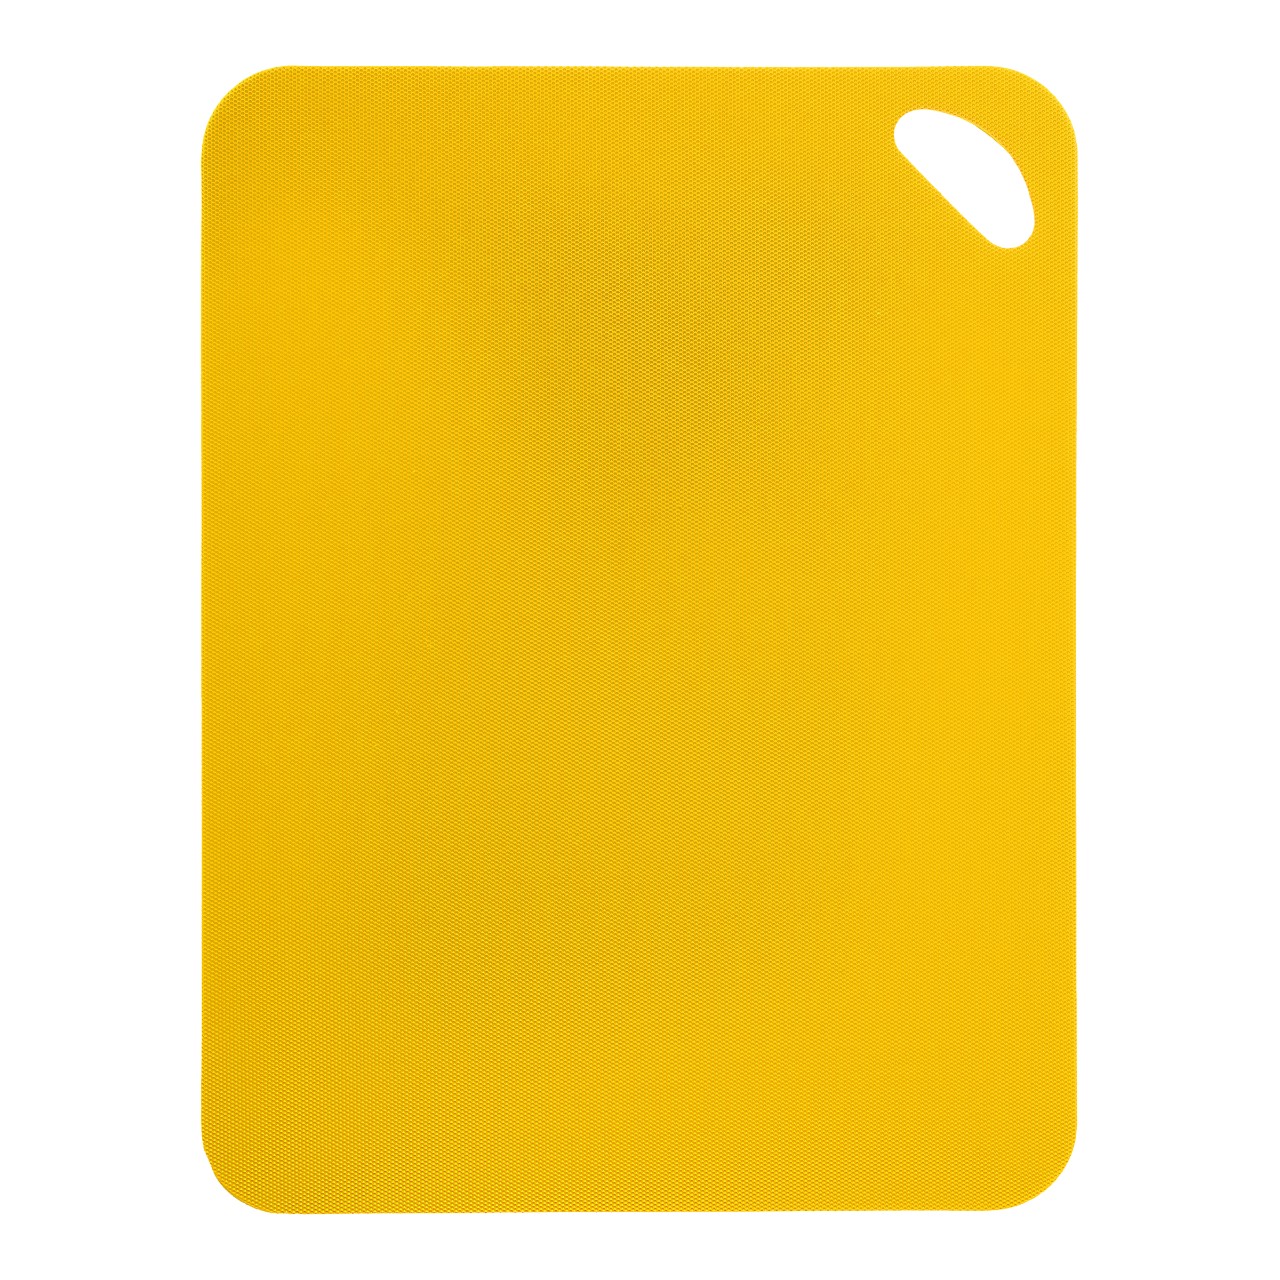 Flexibele sni 38 x 29 cm, geel